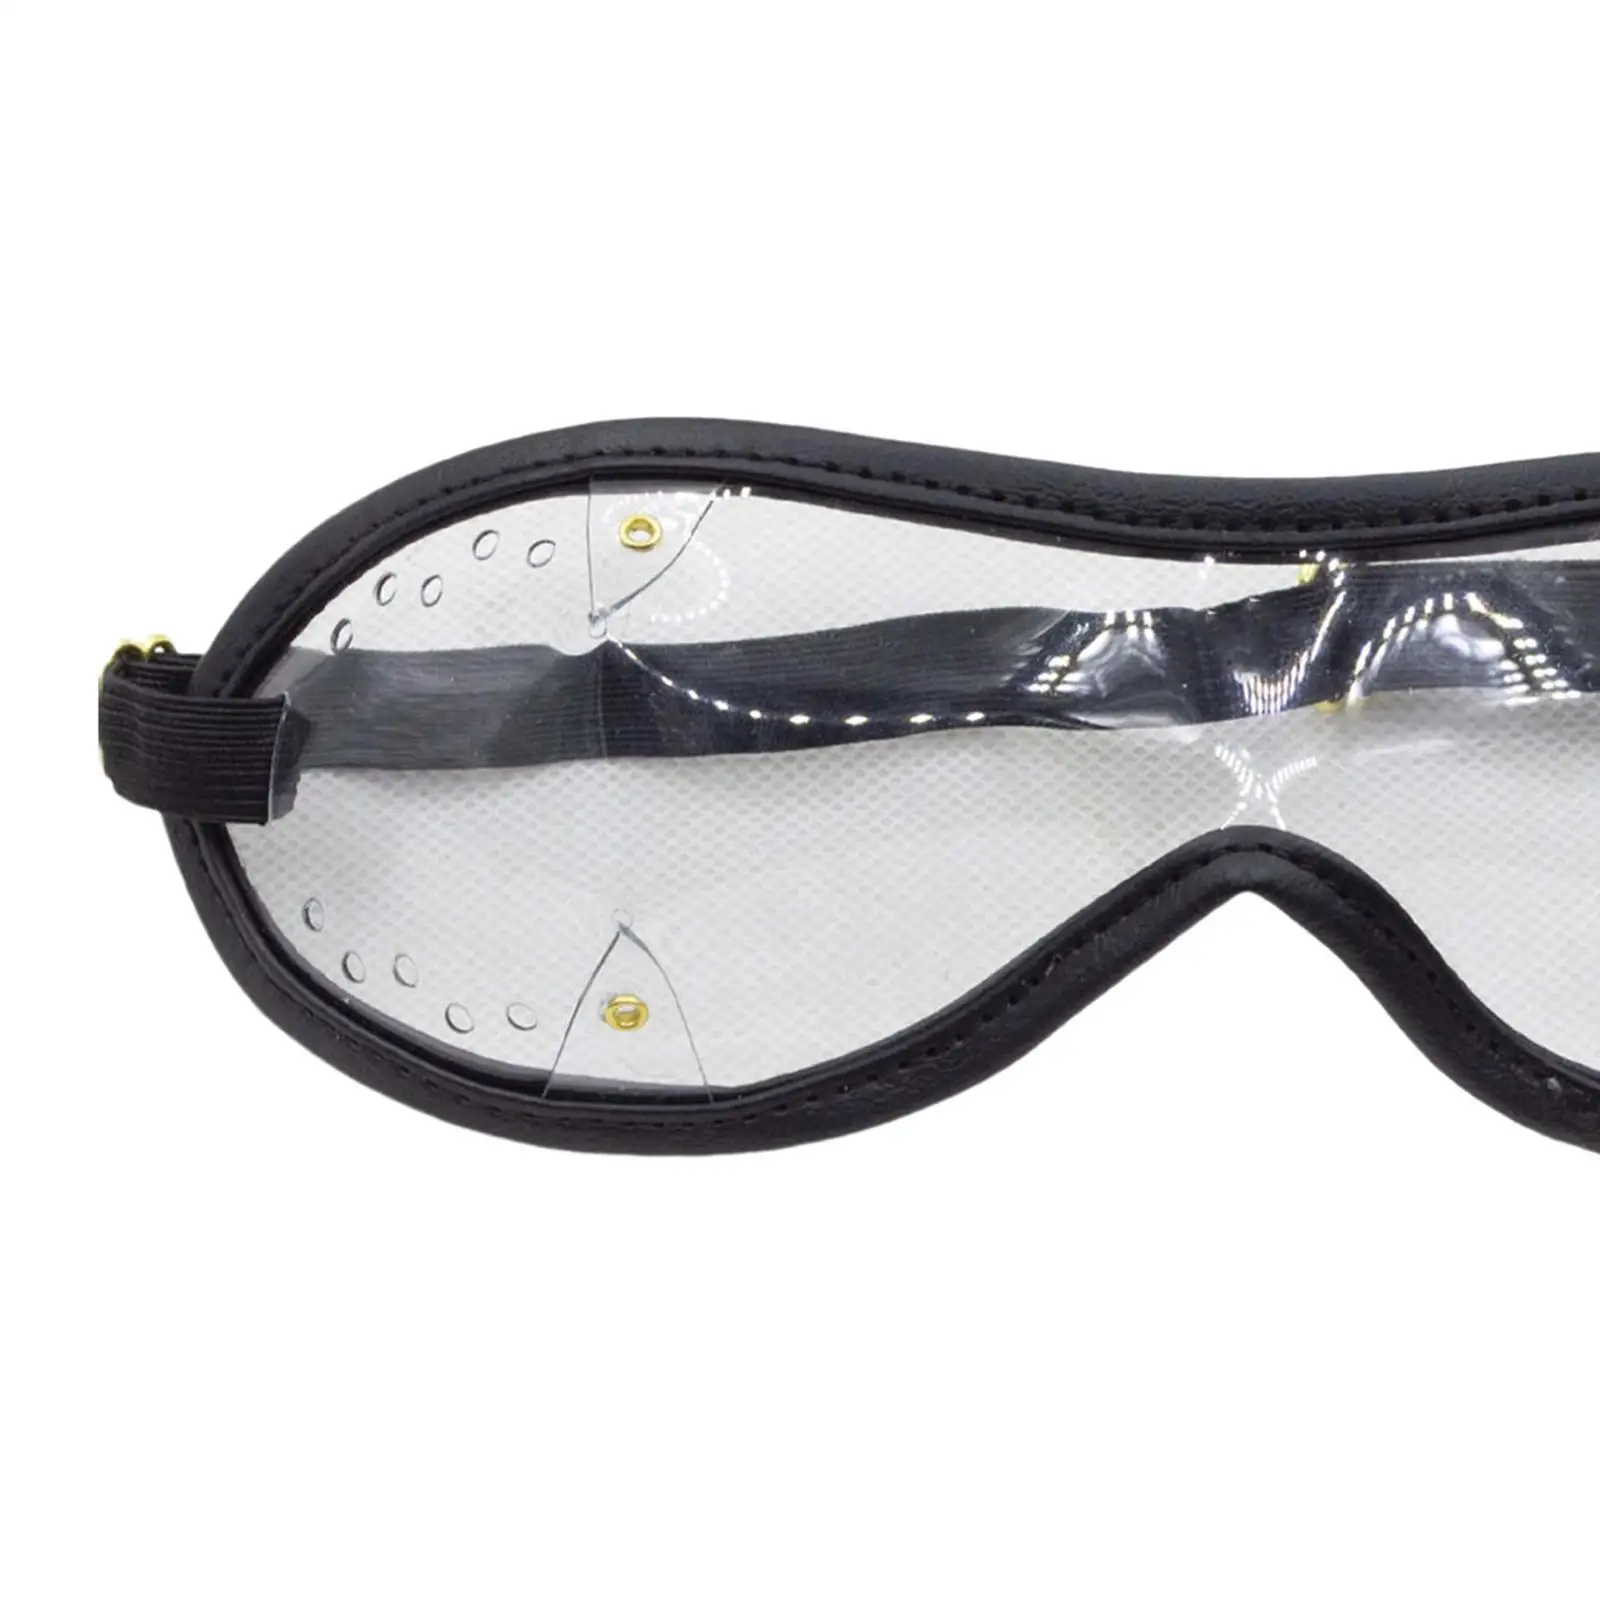 

Очки Skydiver для защиты глаз с регулируемым ремешком для катания на коньках, пеших прогулок, черного цвета